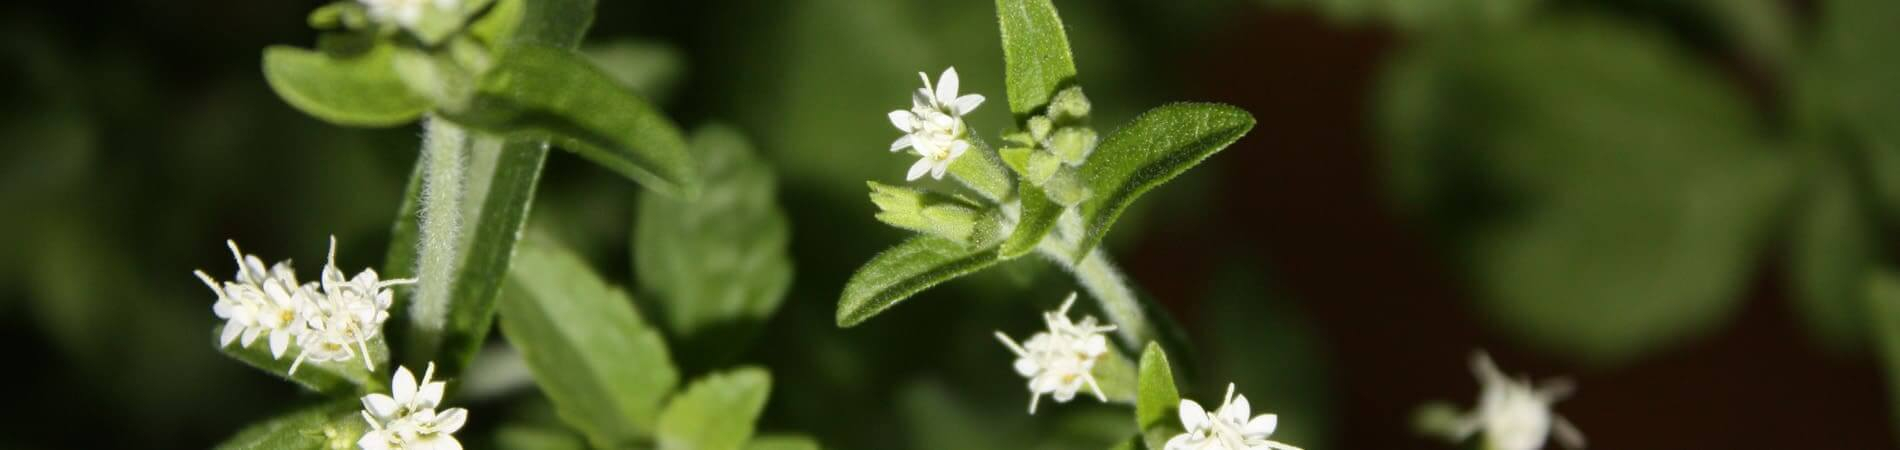 Cos'è la Stevia - Fiore della pianta Stevia -...